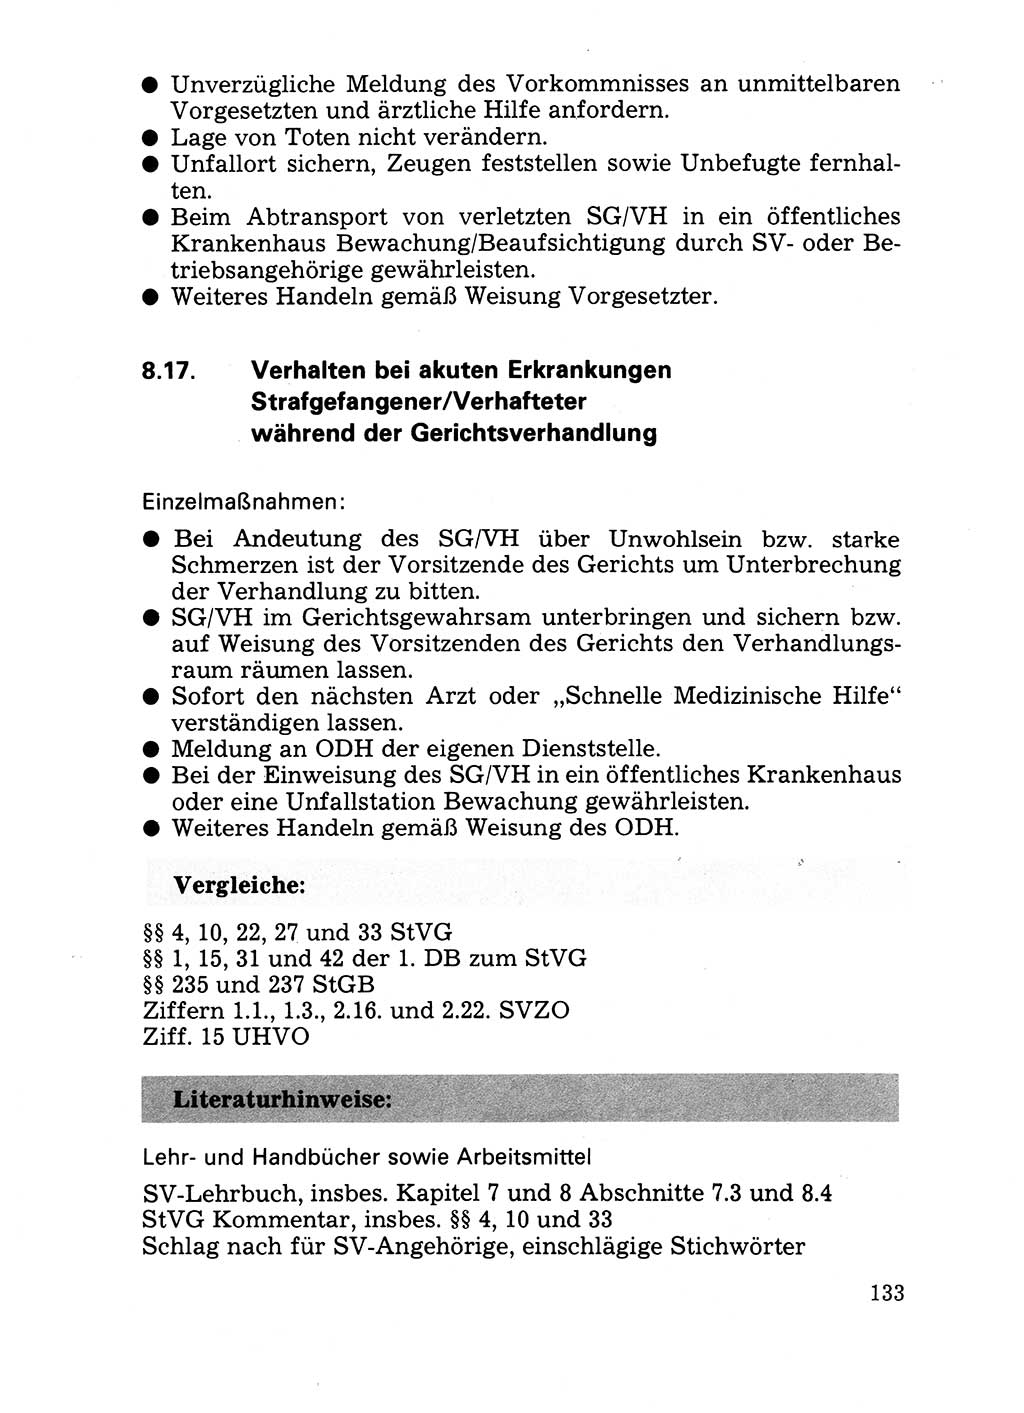 Handbuch für operative Dienste, Abteilung Strafvollzug (SV) [Ministerium des Innern (MdI) Deutsche Demokratische Republik (DDR)] 1981, Seite 133 (Hb. op. D. Abt. SV MdI DDR 1981, S. 133)